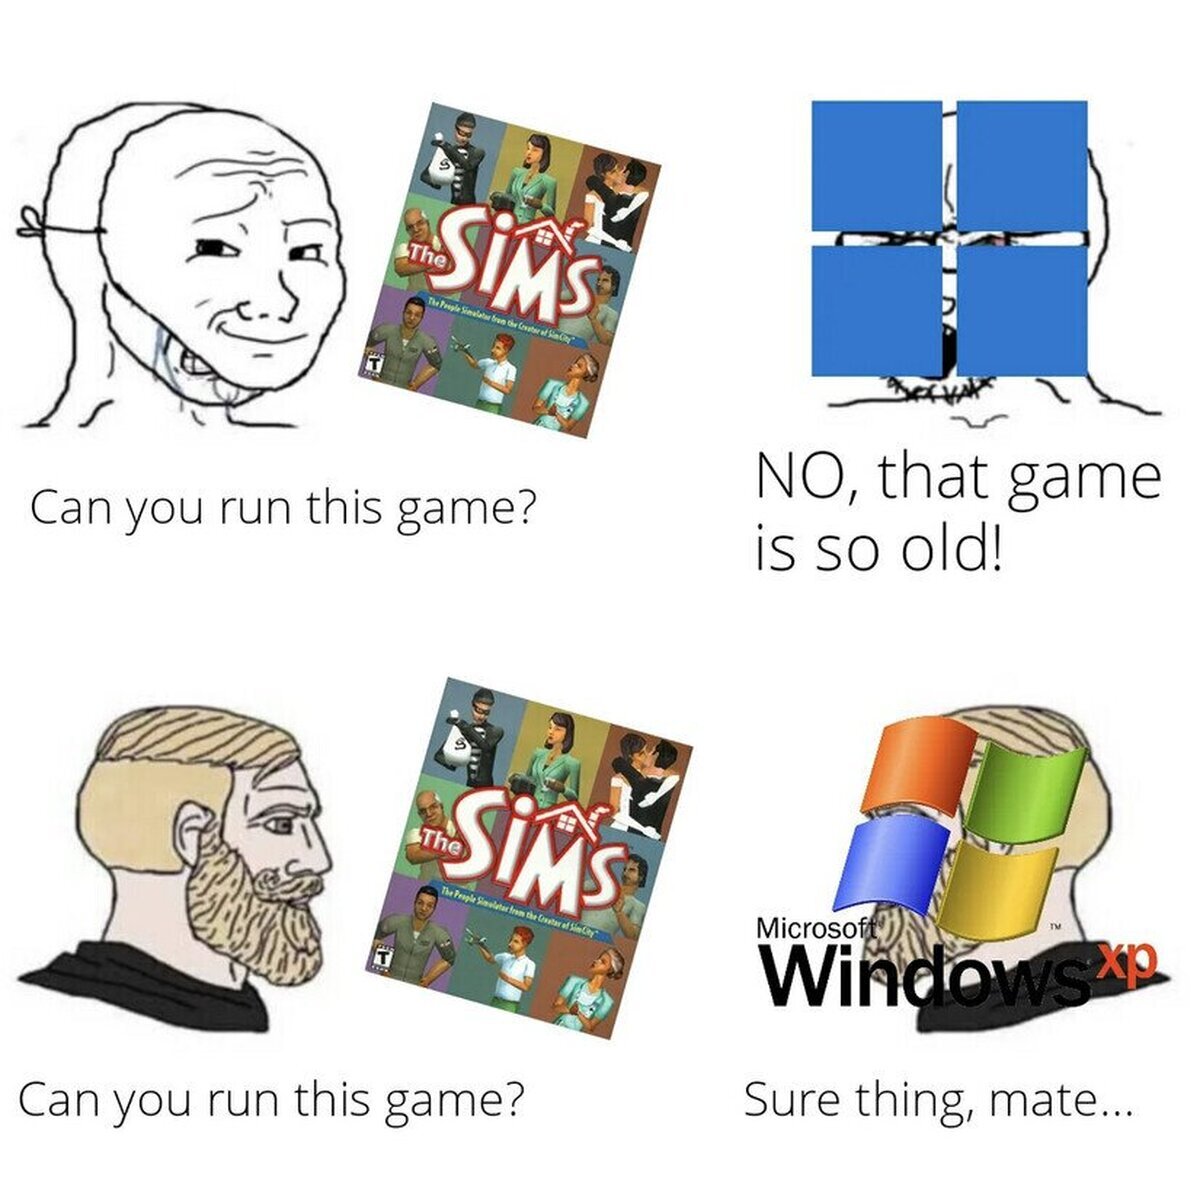 Windows XP siempre será el mejor